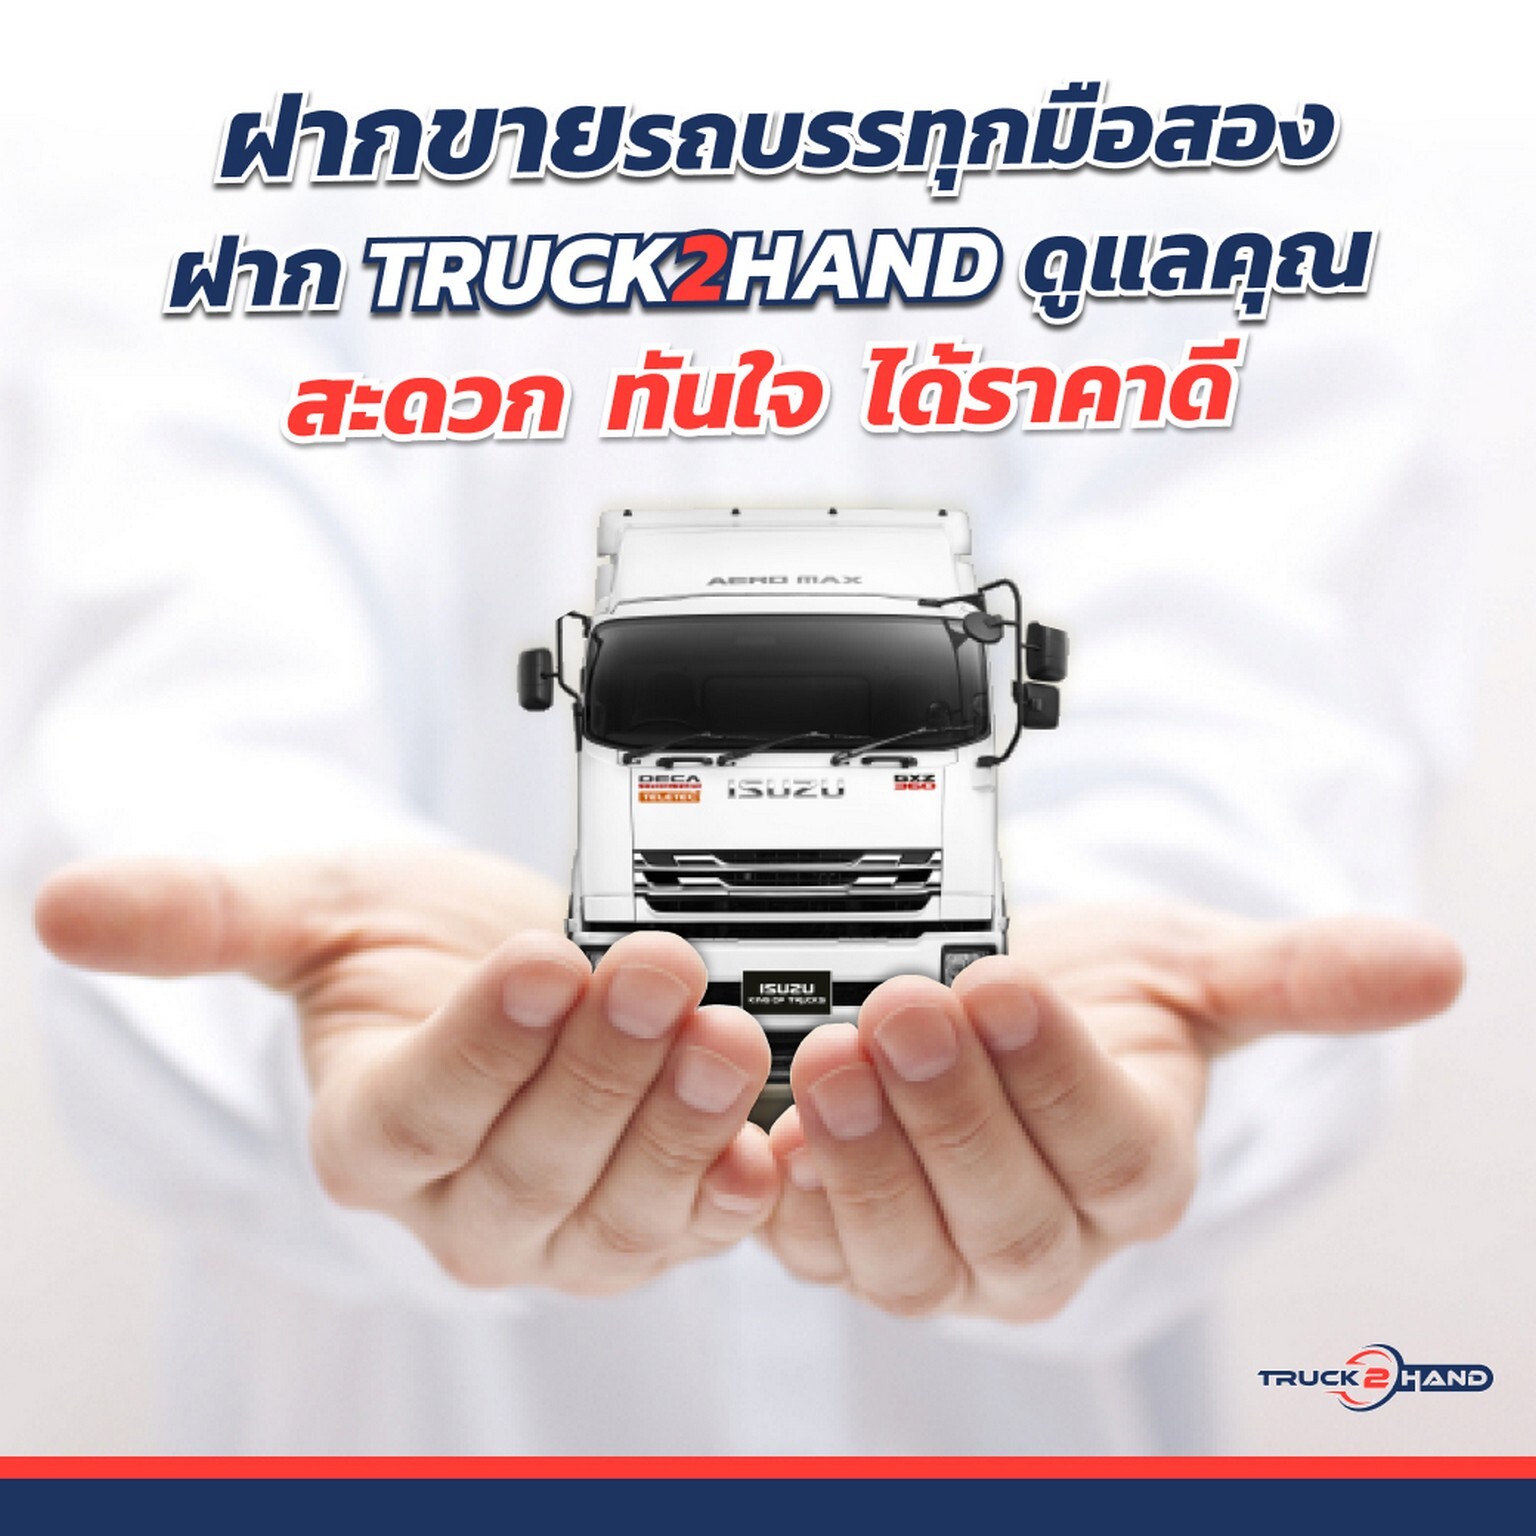 กลุ่มตรีเพชรเดินหน้ารุกธุรกิจใหม่ Truck2Hand.com ตลาดซื้อ-ขายรถบรรทุกมือสองออนไลน์ใหญ่ที่สุด ตอบสนองผู้ประกอบการยุค "ชีวิตวิถีใหม่"